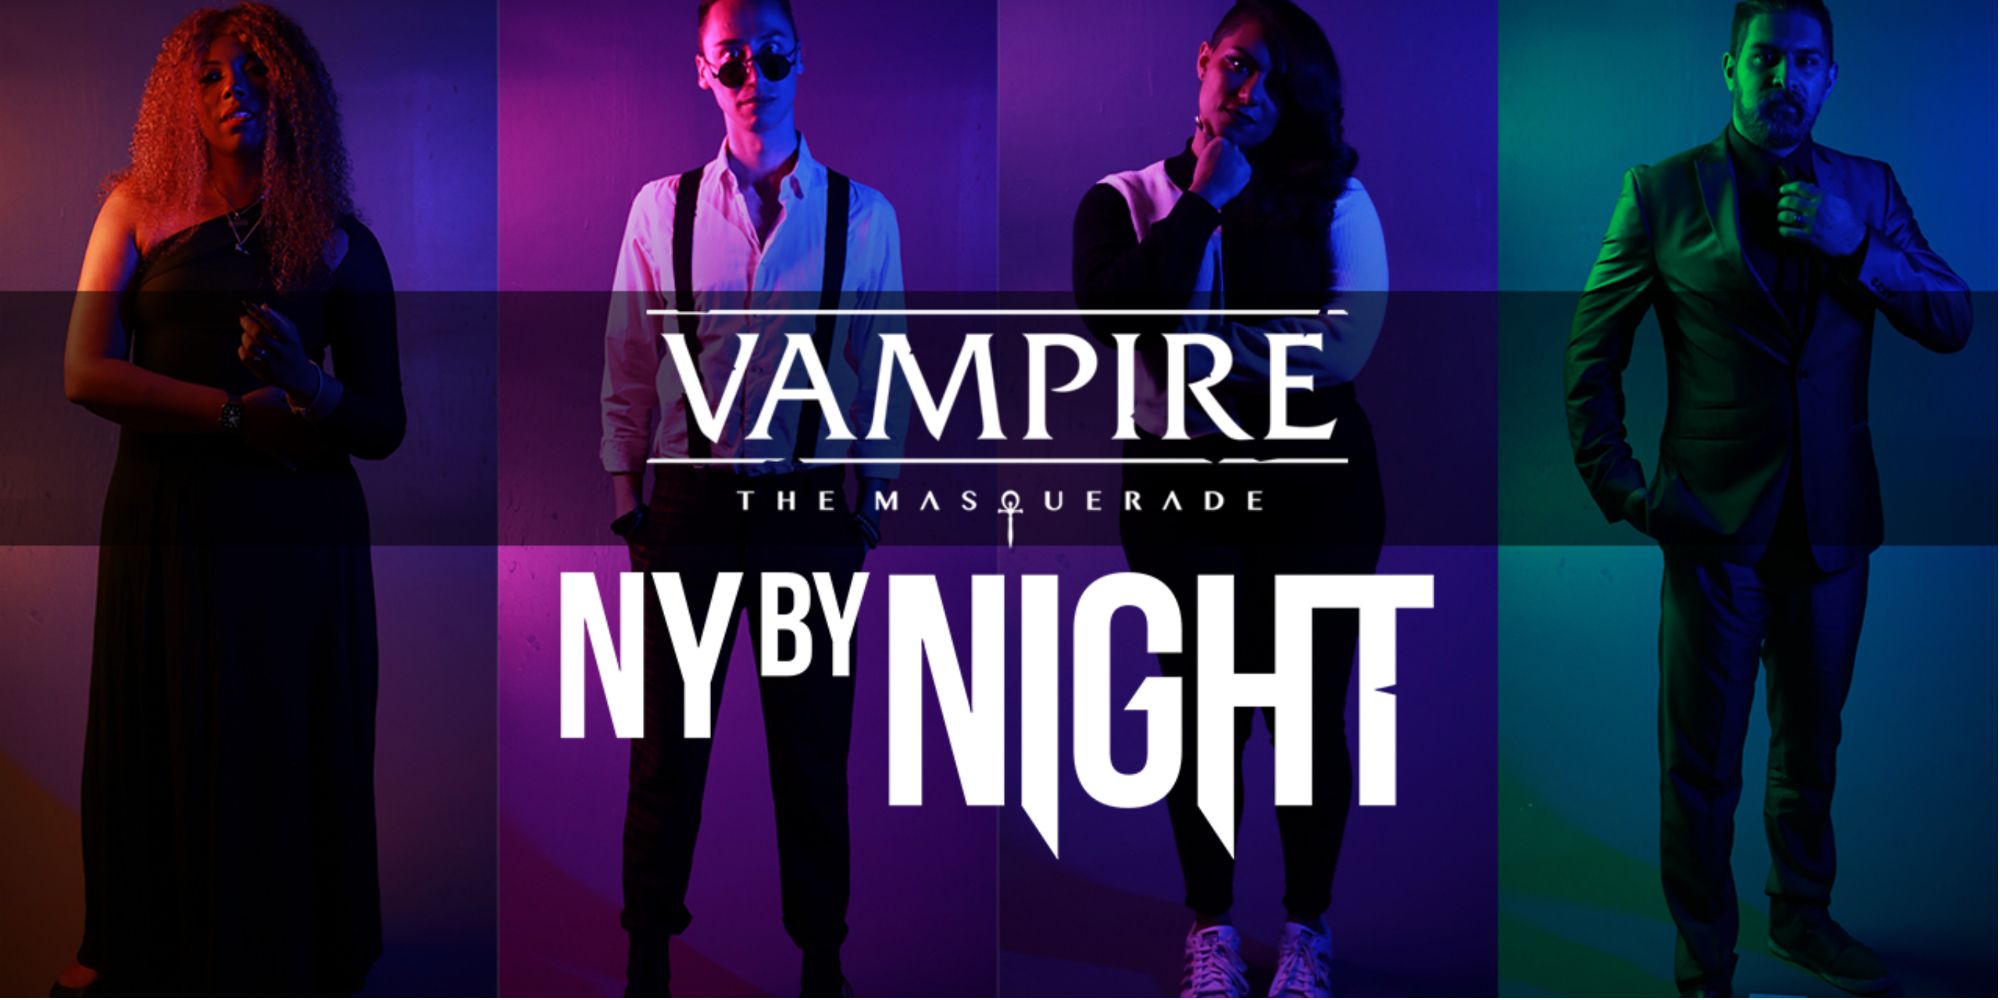 Vampire: The Masquerade’s New York By Night Season 1 debuta el 1 de julio